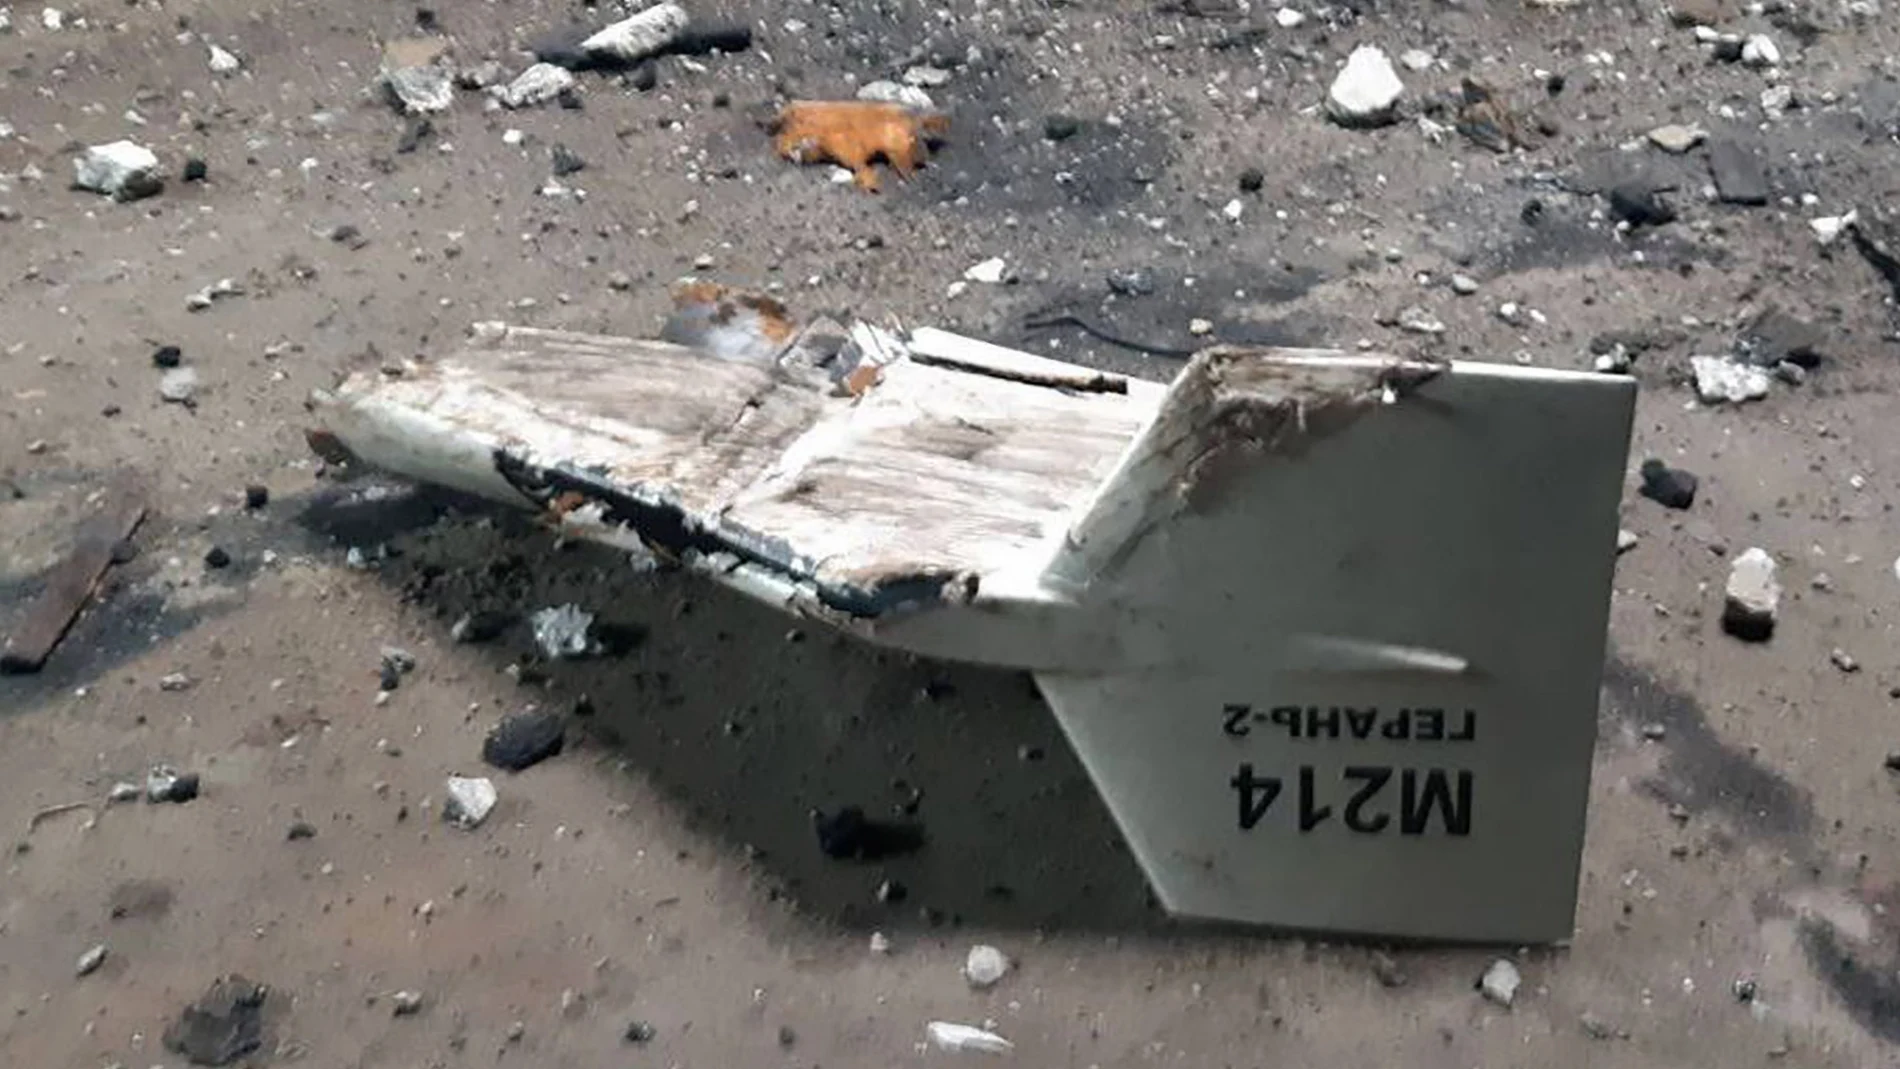 Los restos de lo que Kyiv ha descrito como un avión no tripulado Shahed iraní derribado cerca de Kupiansk, Ucrania